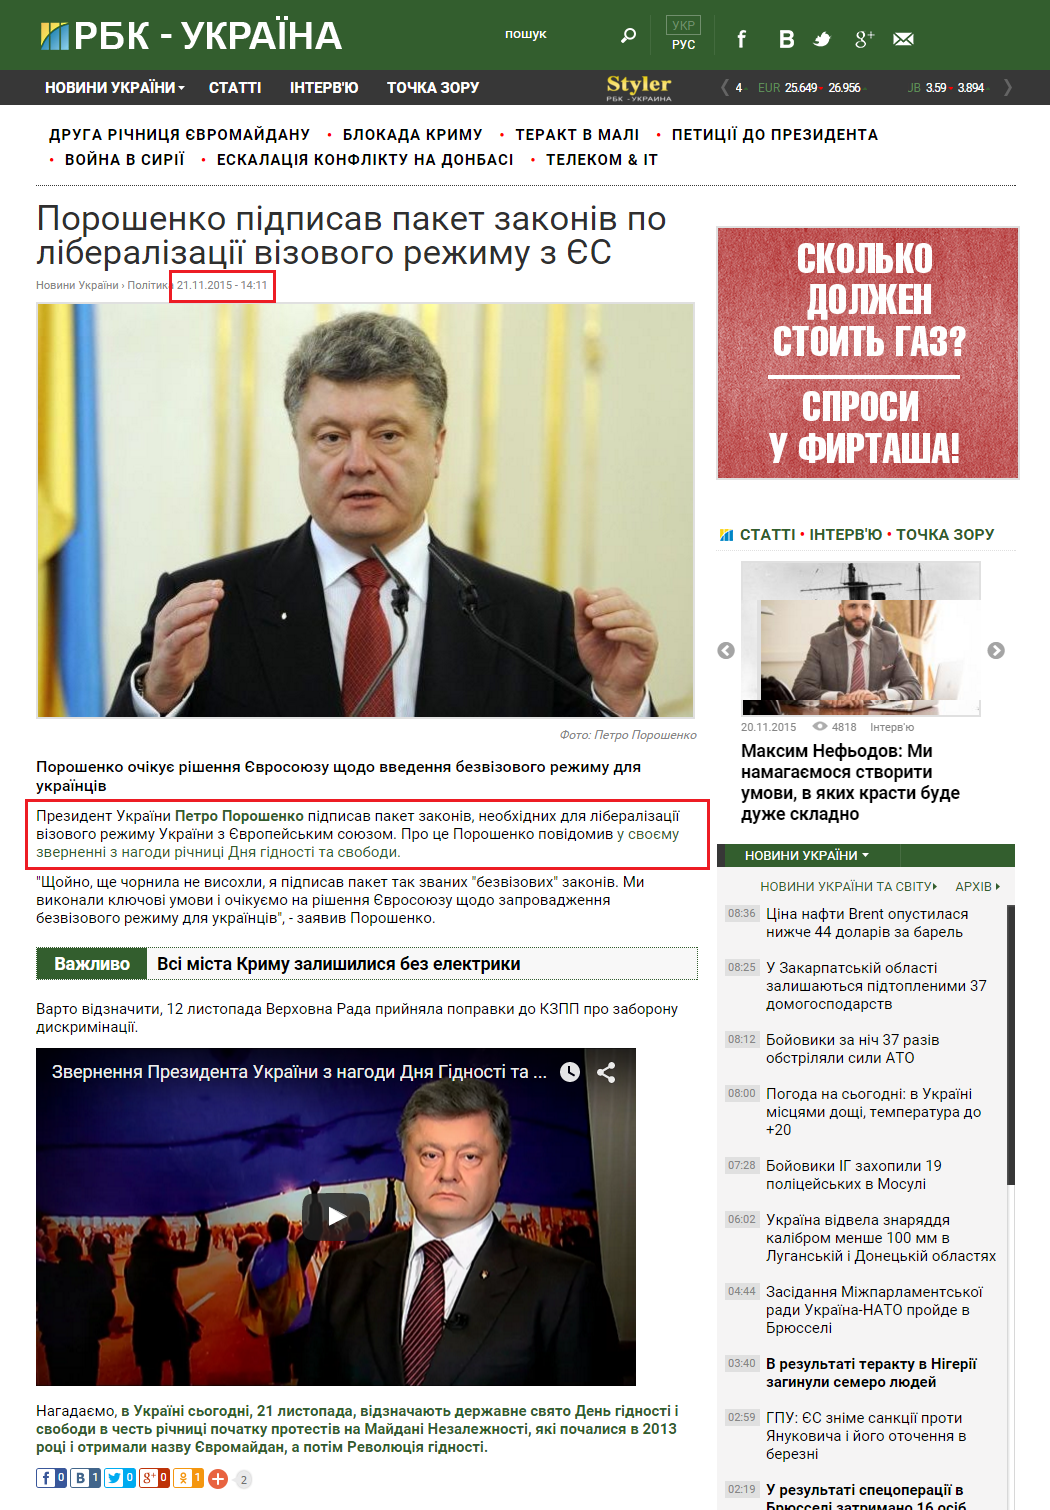 http://www.rbc.ua/ukr/news/poroshenko-podpisal-paket-zakonov-liberalizatsii-1448107830.html